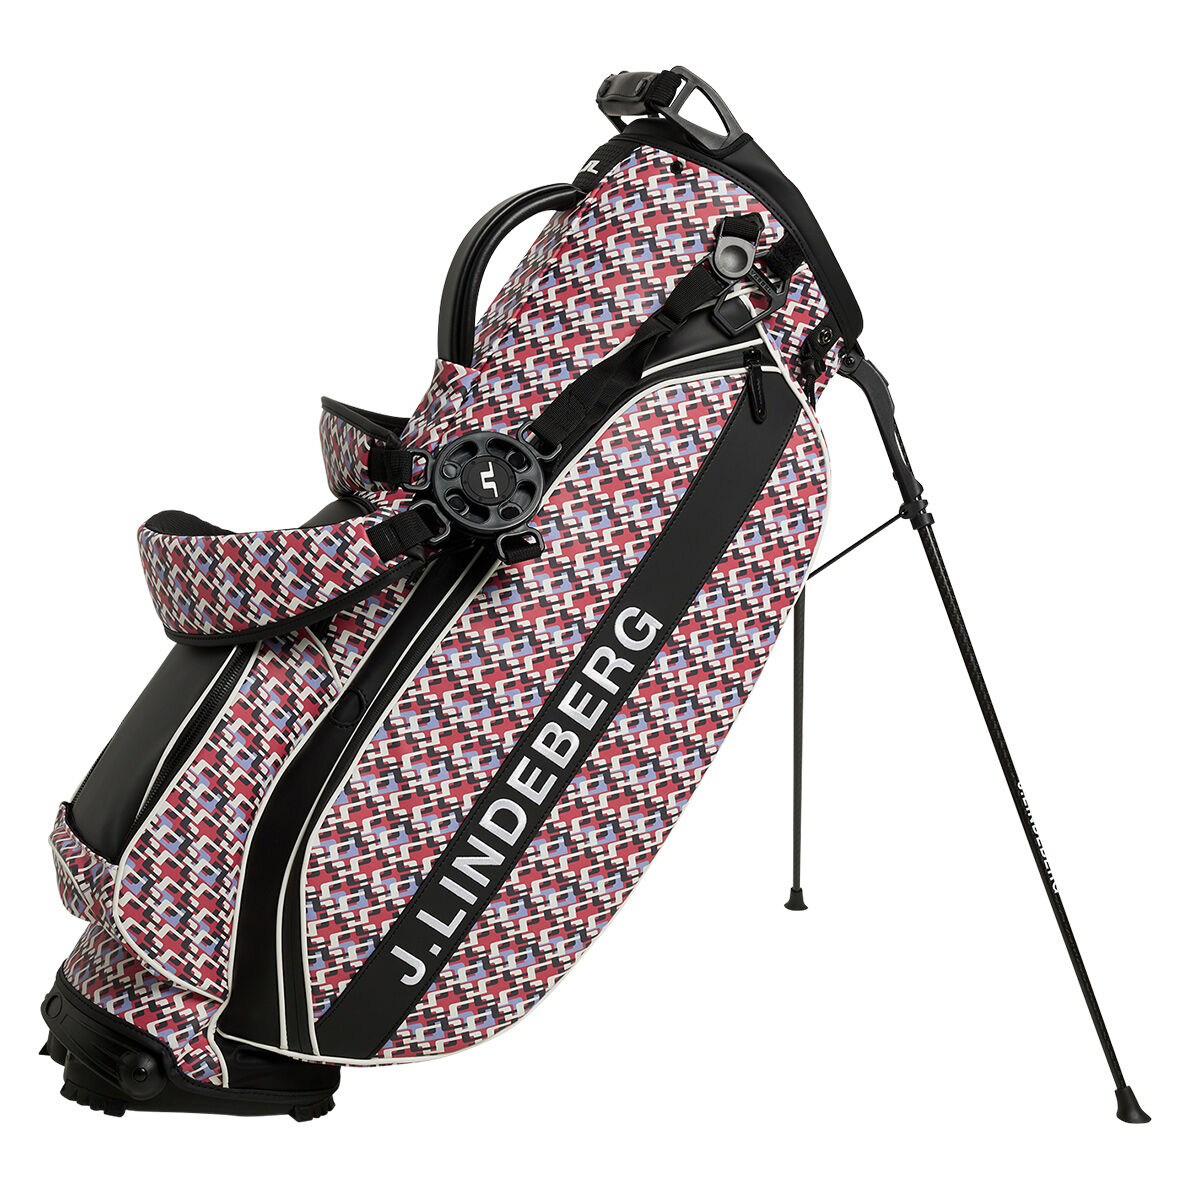 J.Lindeberg Play Print Golf Stand Bag, Jl micro bridge rose red | American Golf